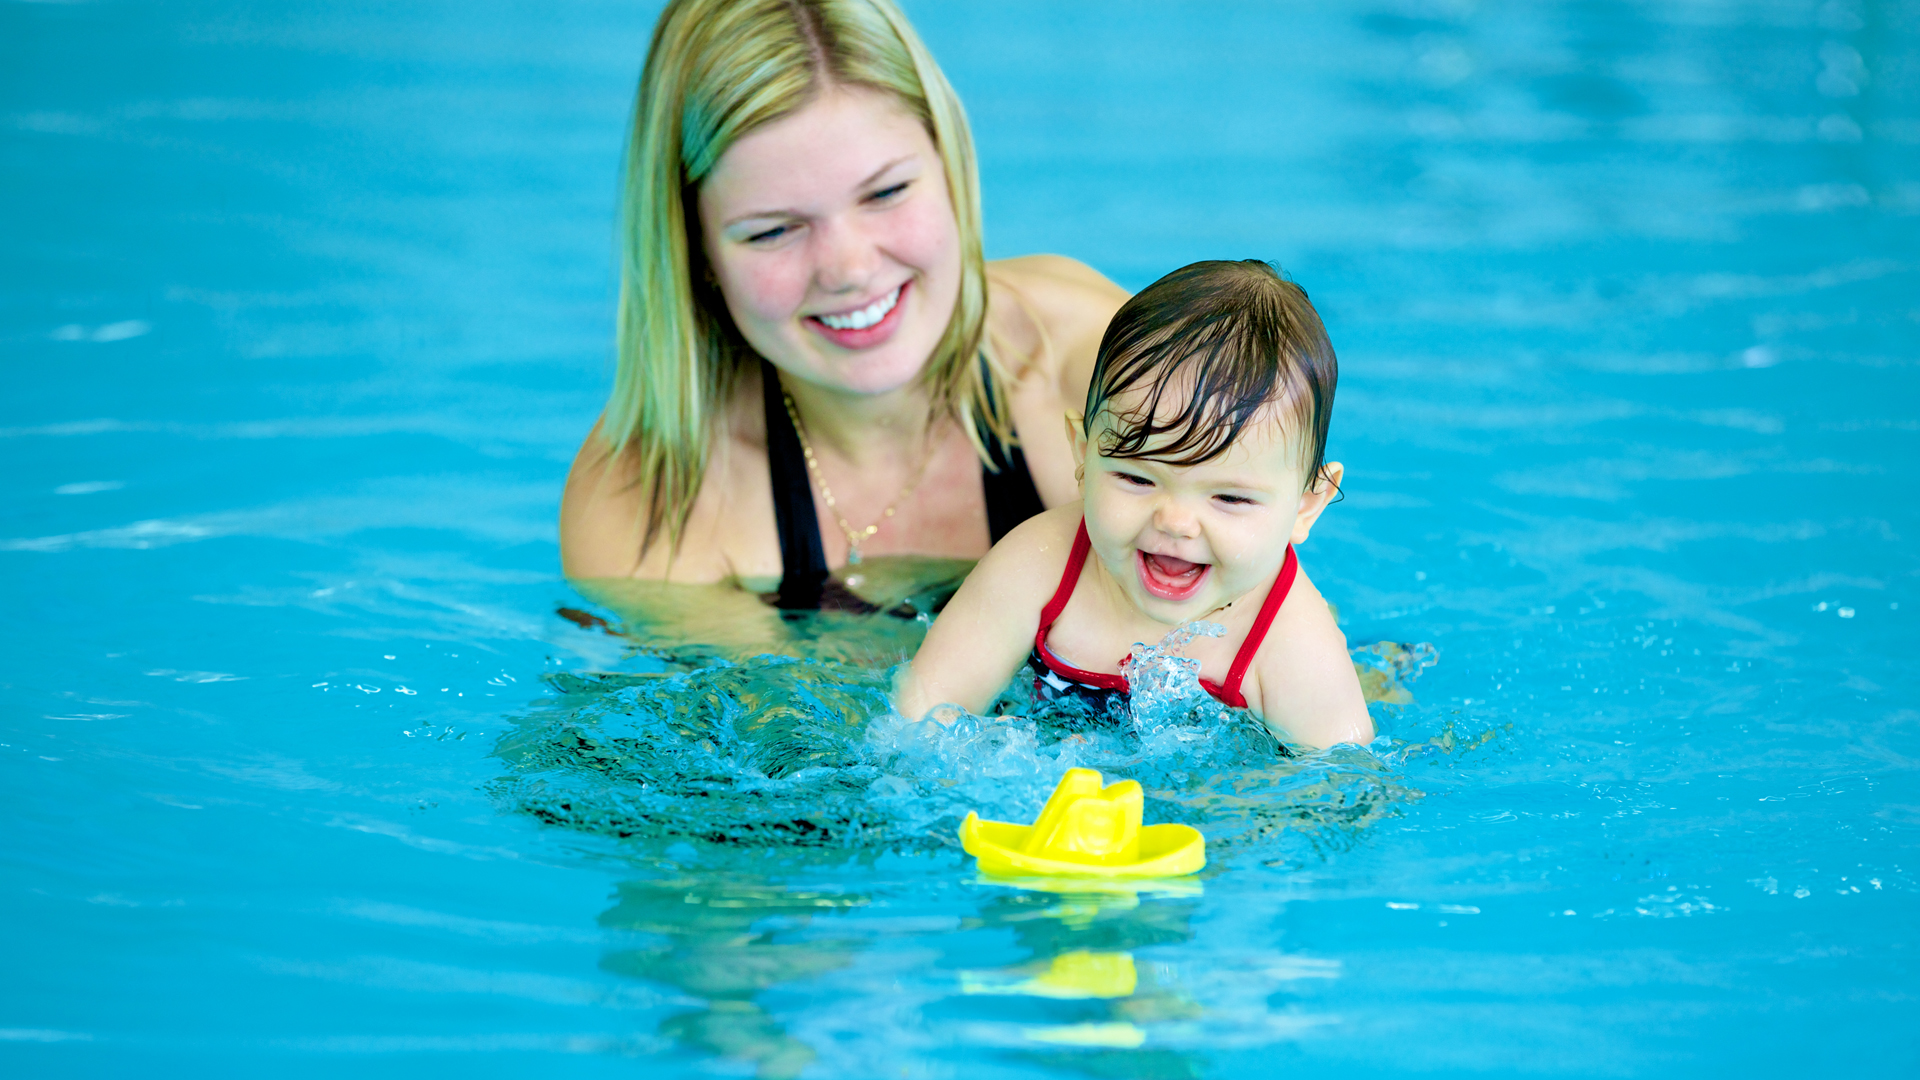 Gemengd Ongelofelijk Laboratorium Samen zwemmen met je kindje; genieten en plezier maken.